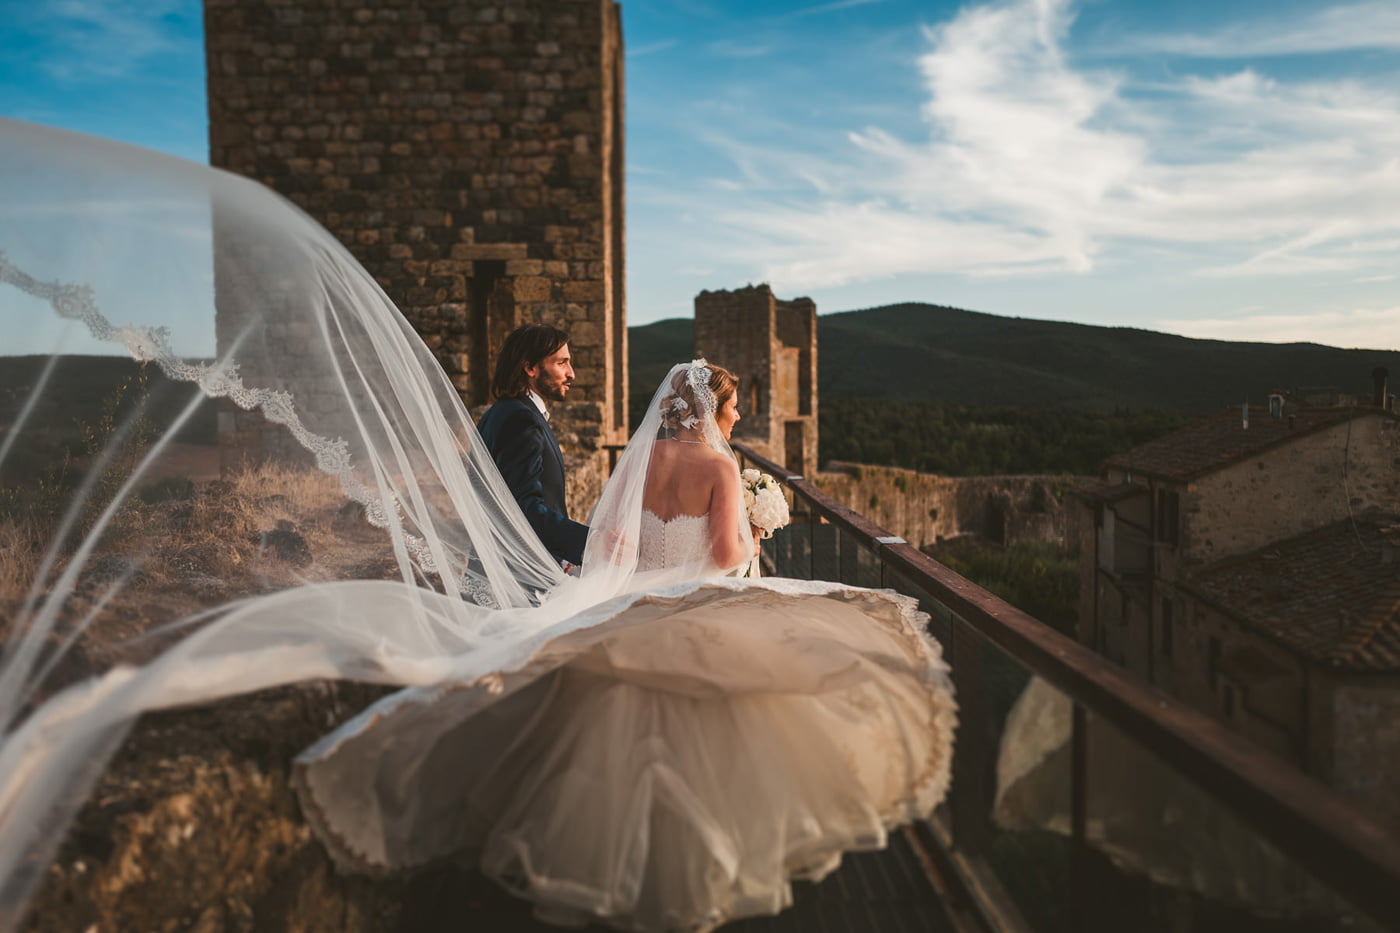 Andrea & Francesca | Wedding at Borgo San Luigi by Federico Pannacci 60